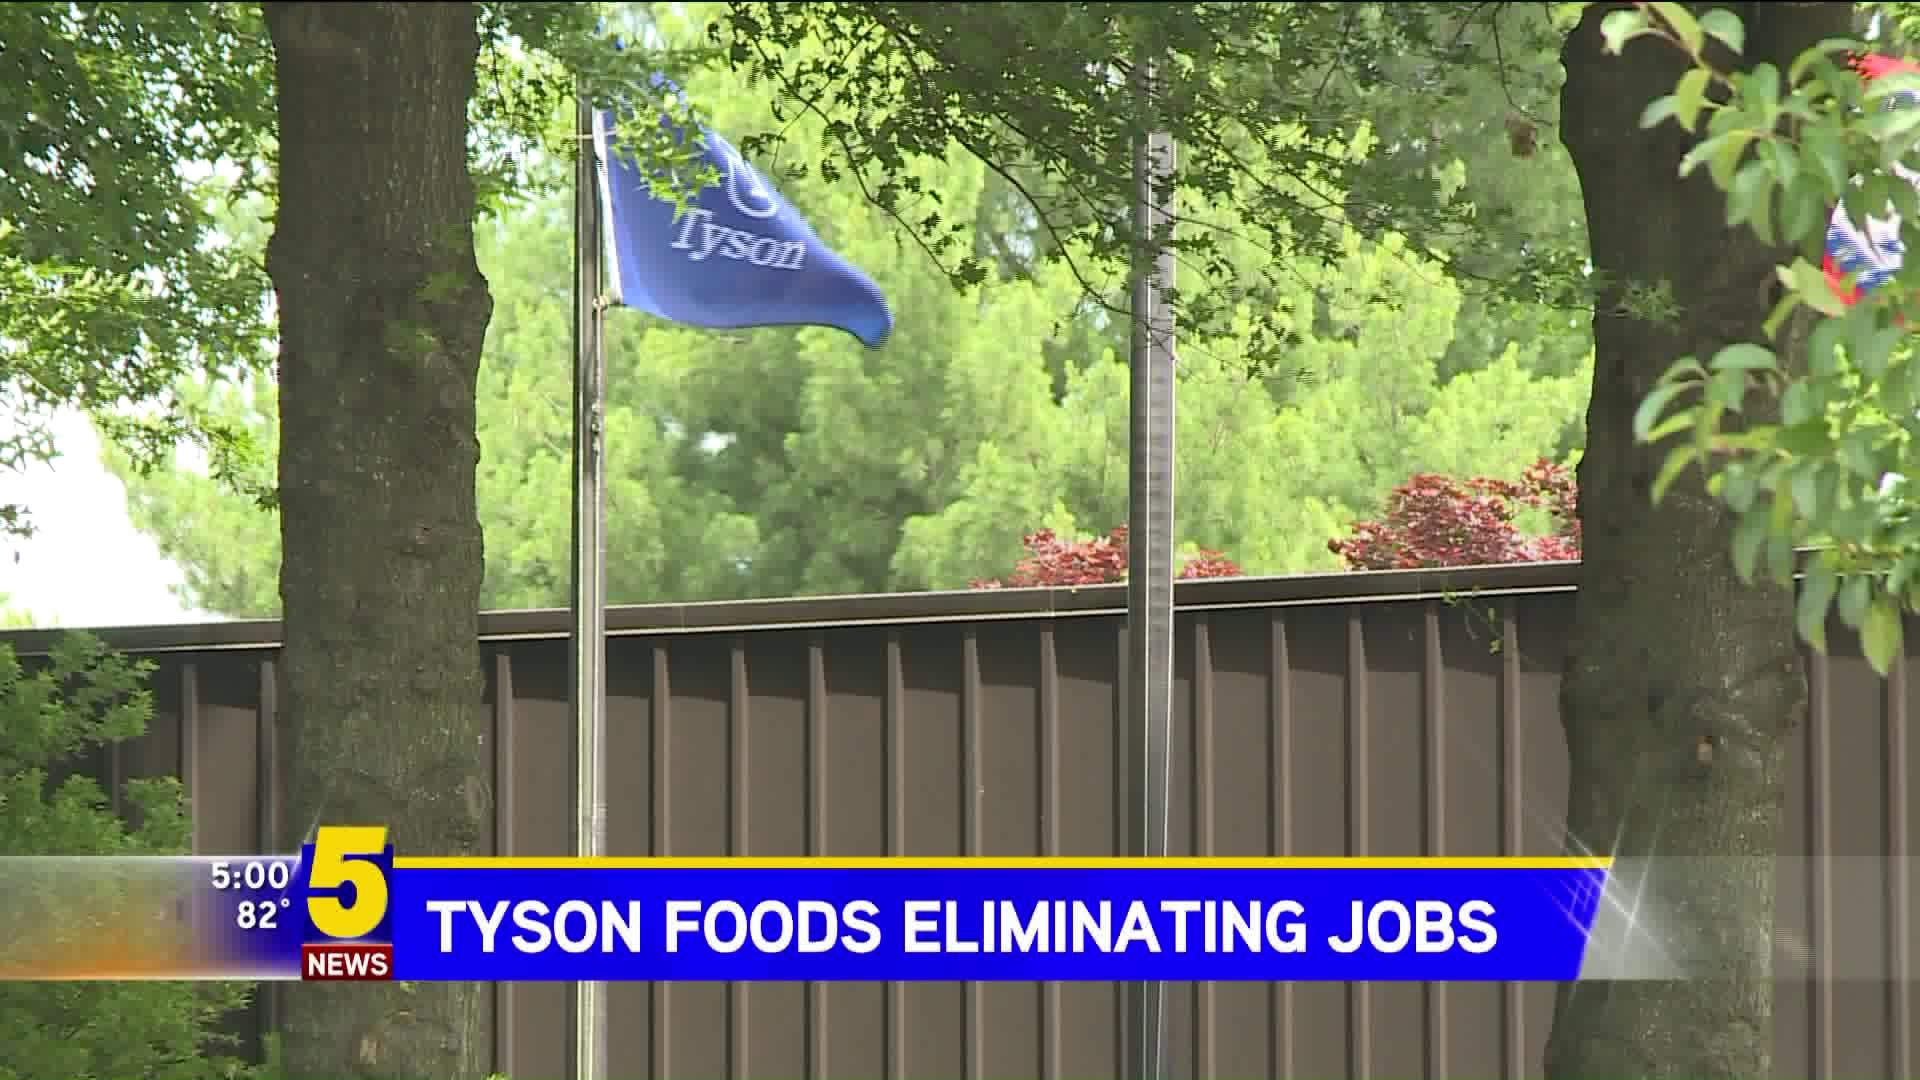 Tyson Foods Eliminating Jobs